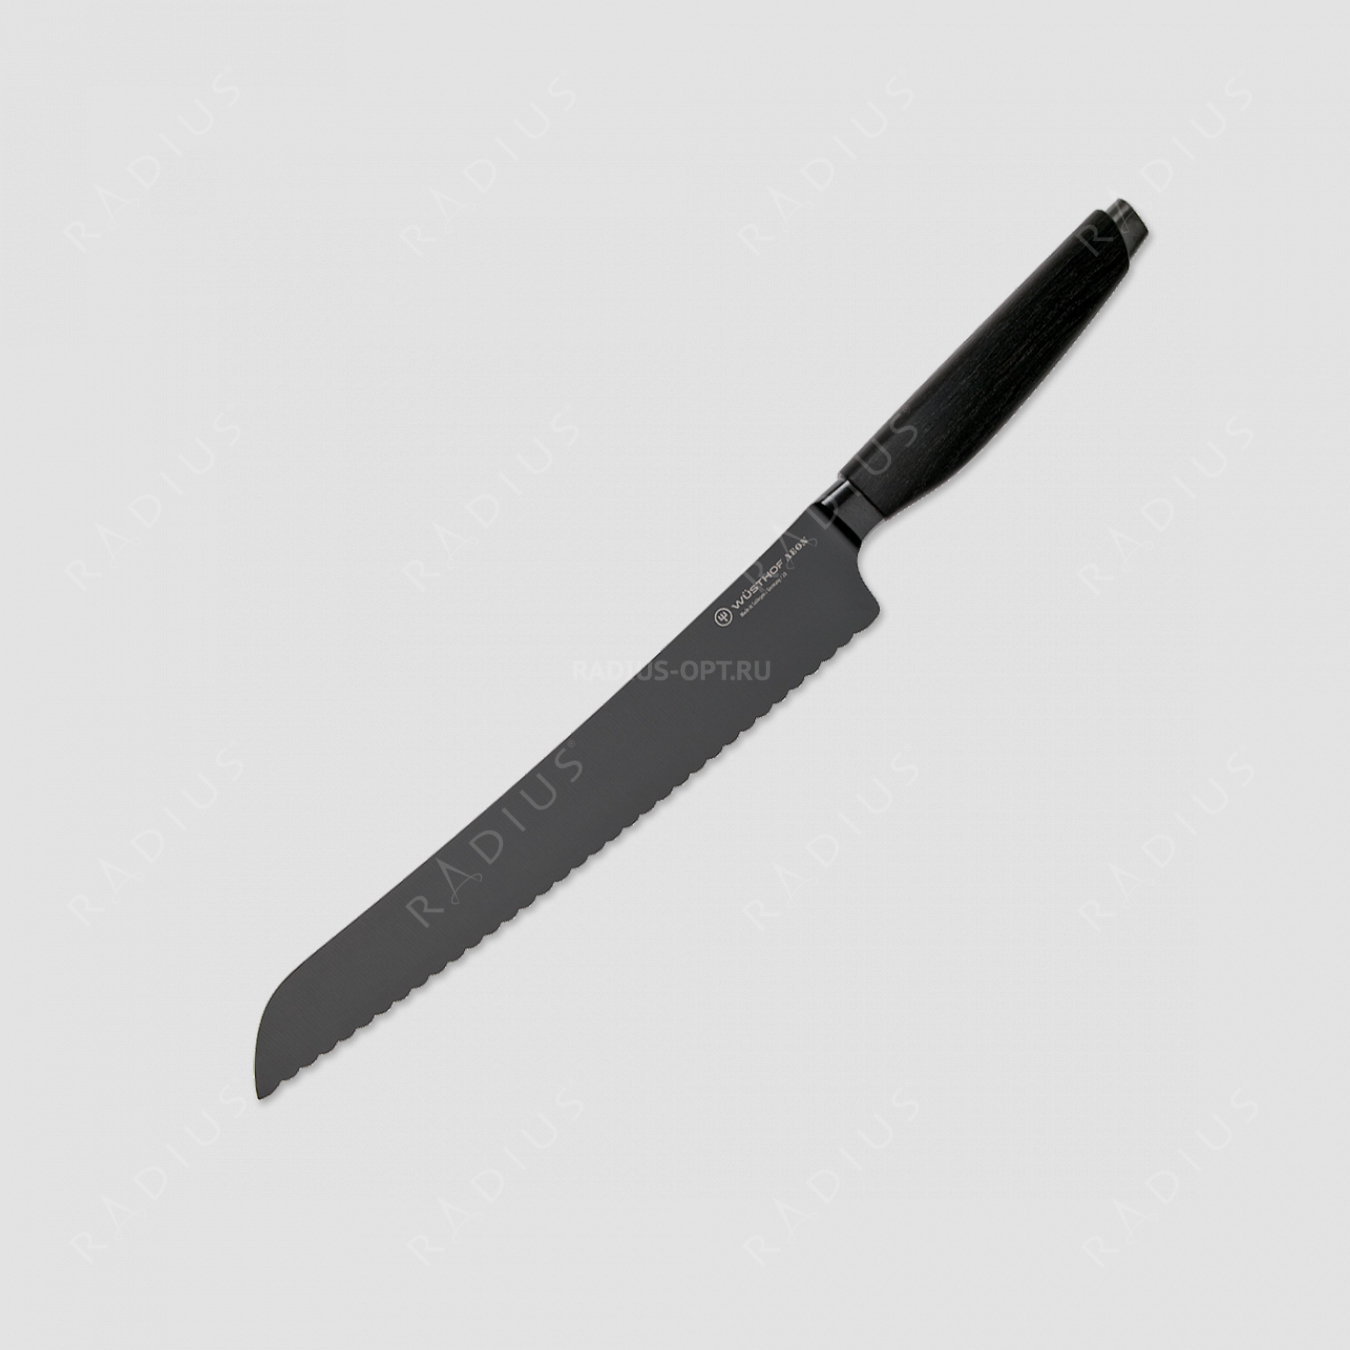 Эксклюзивный универсальный нож слайсер 26 см, лимитированная серия Aeon, WUESTHOF, Золинген, Германия